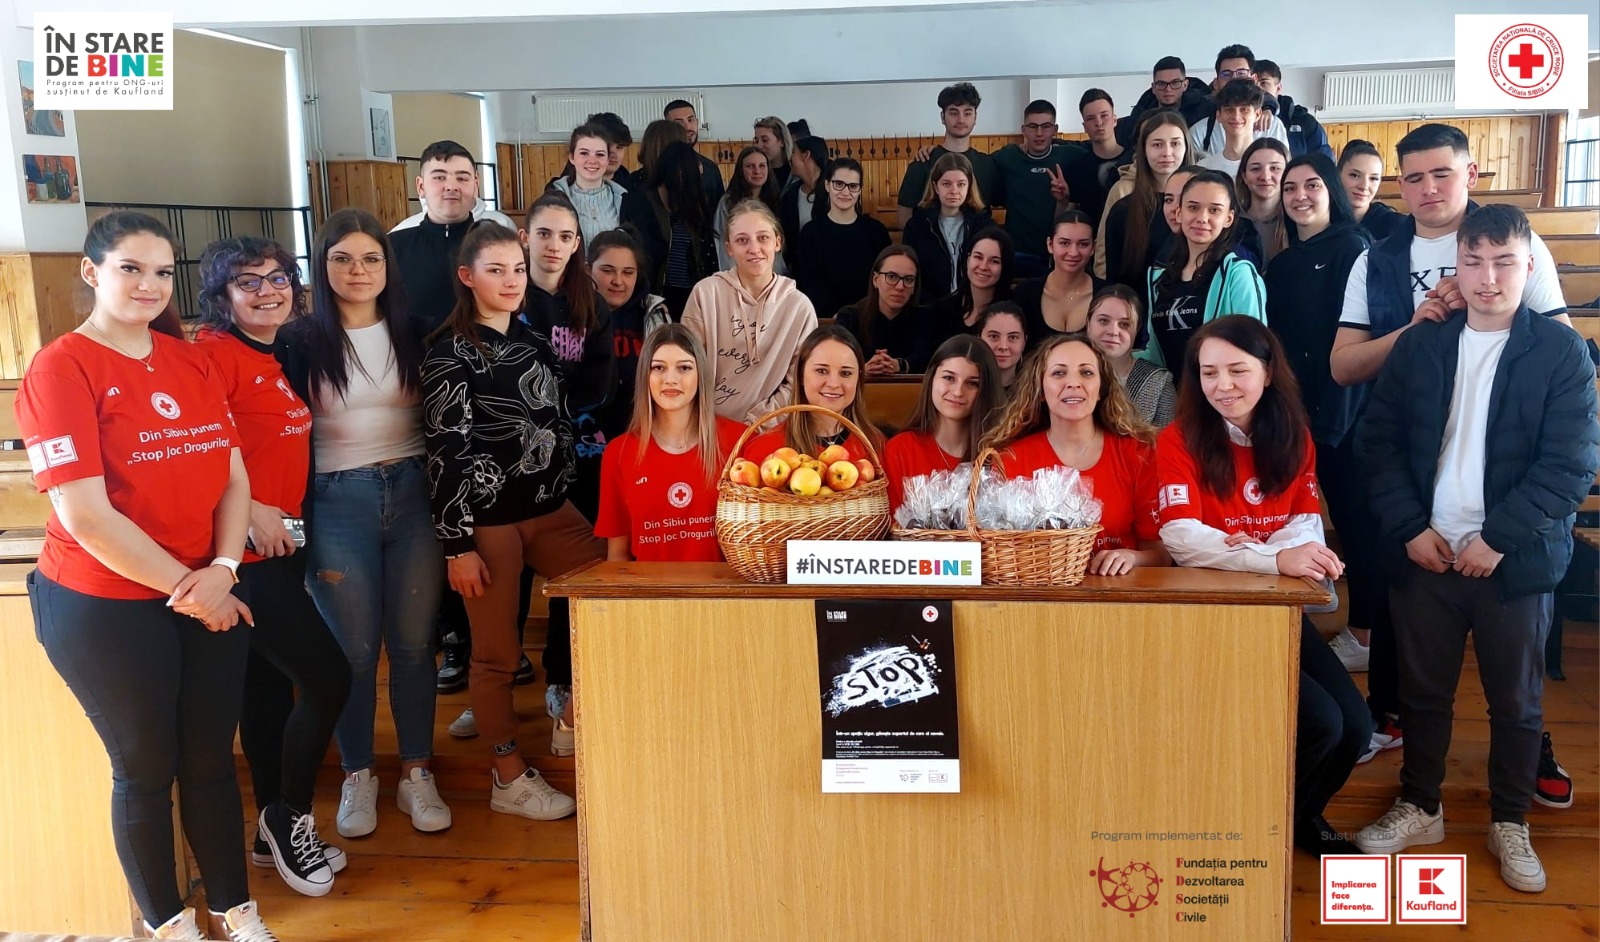 Proiect „Din Sibiu Punem Stop Joc Drogurilor”: Crucea Roșie pune la dispoziția adolescenților un număr de WhatsApp unde pot discuta despre probleme legate de droguri și bullying